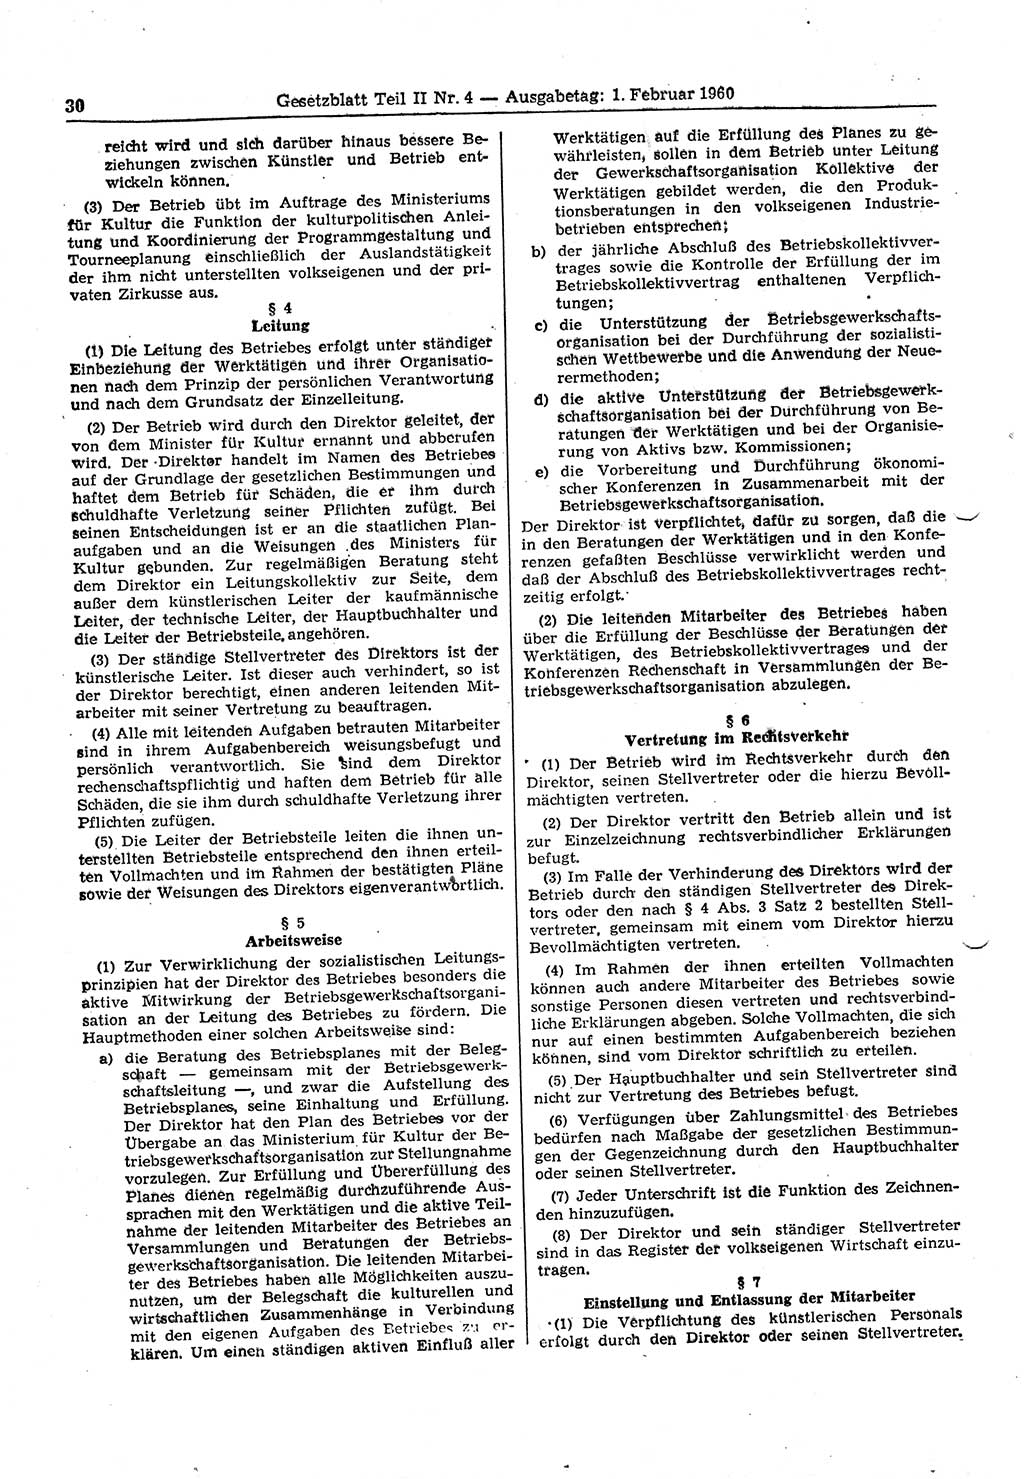 Gesetzblatt (GBl.) der Deutschen Demokratischen Republik (DDR) Teil ⅠⅠ 1960, Seite 30 (GBl. DDR ⅠⅠ 1960, S. 30)